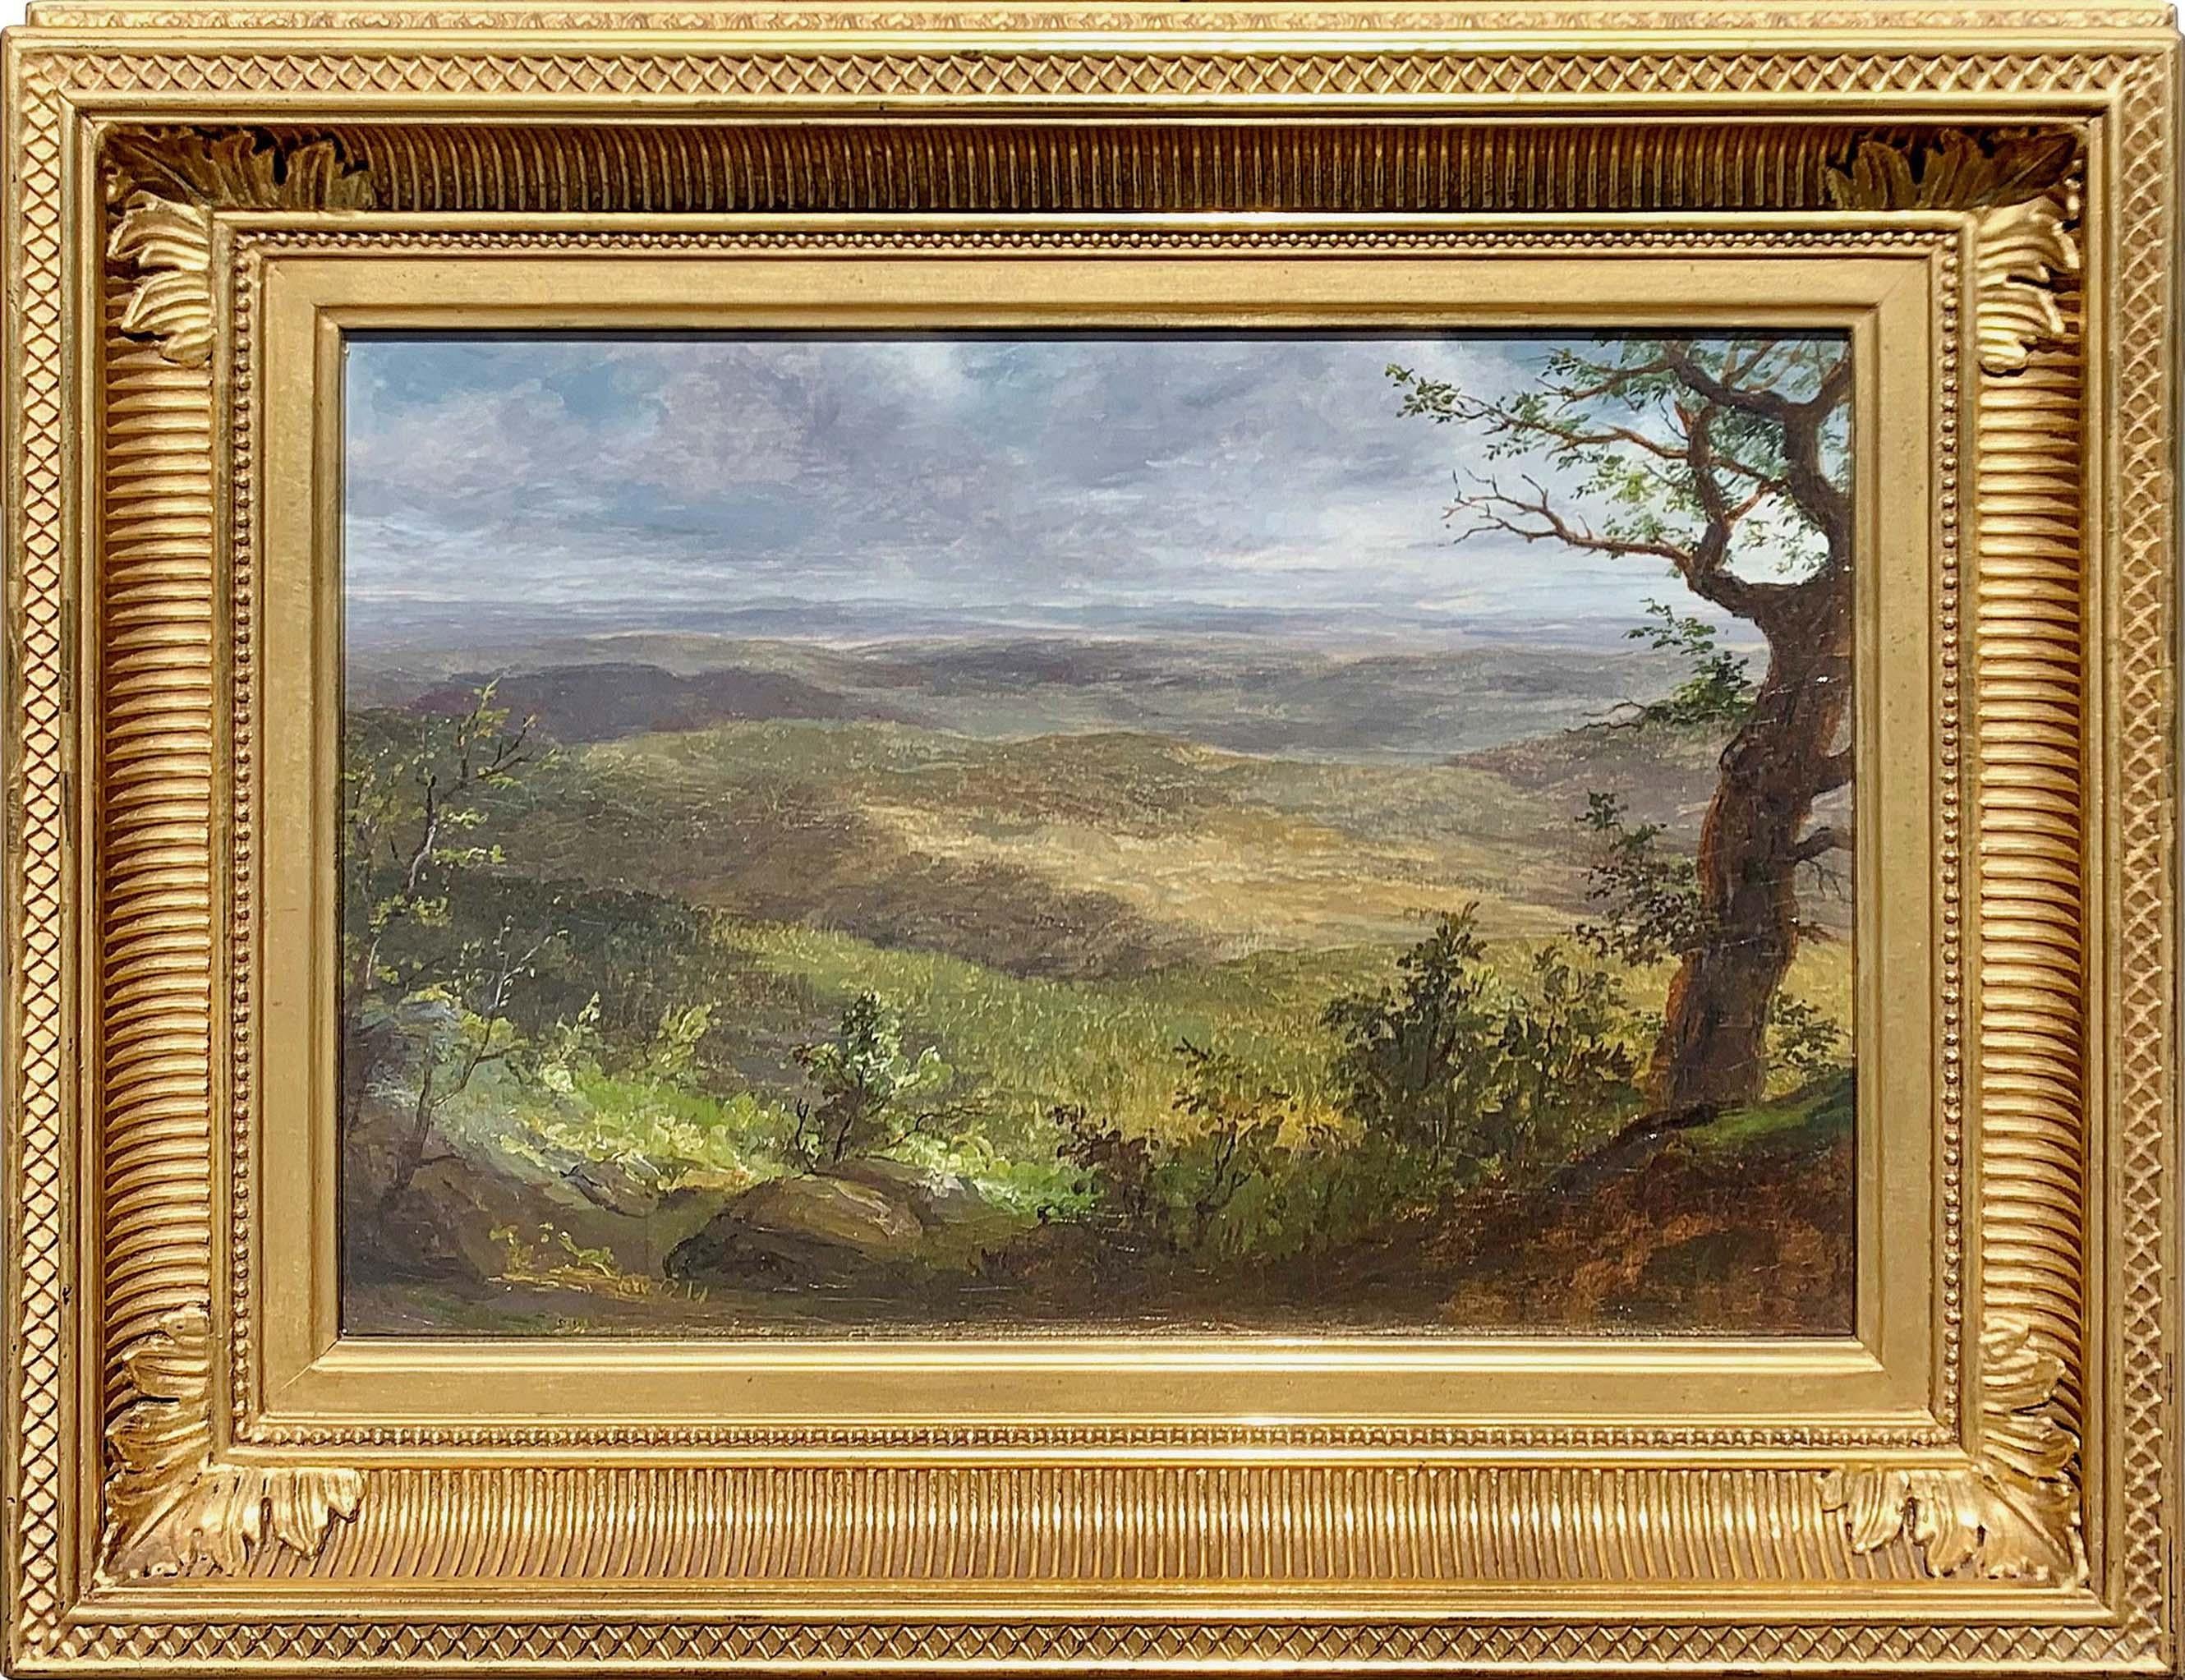 Shawangunk Mountains von Lemuel Maynard Wiles (Amerikaner, 1826-1905)